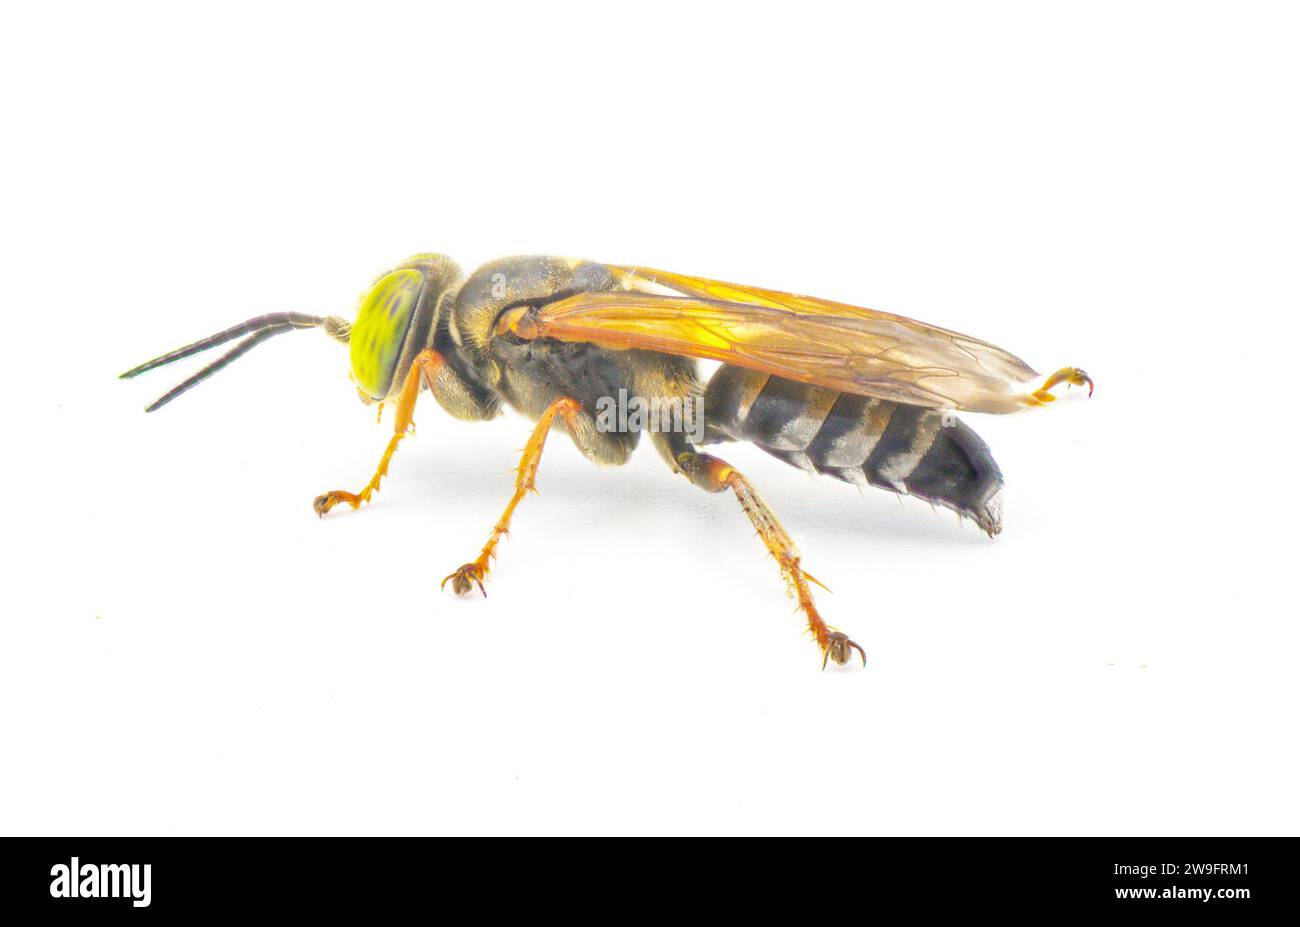 Tachytes aurulentus - vespa di sabbia con occhio verde. Tachytes è un genere di vespe solitarie predatorie e una specie di vespa a testa quadrata della famiglia C. Foto Stock